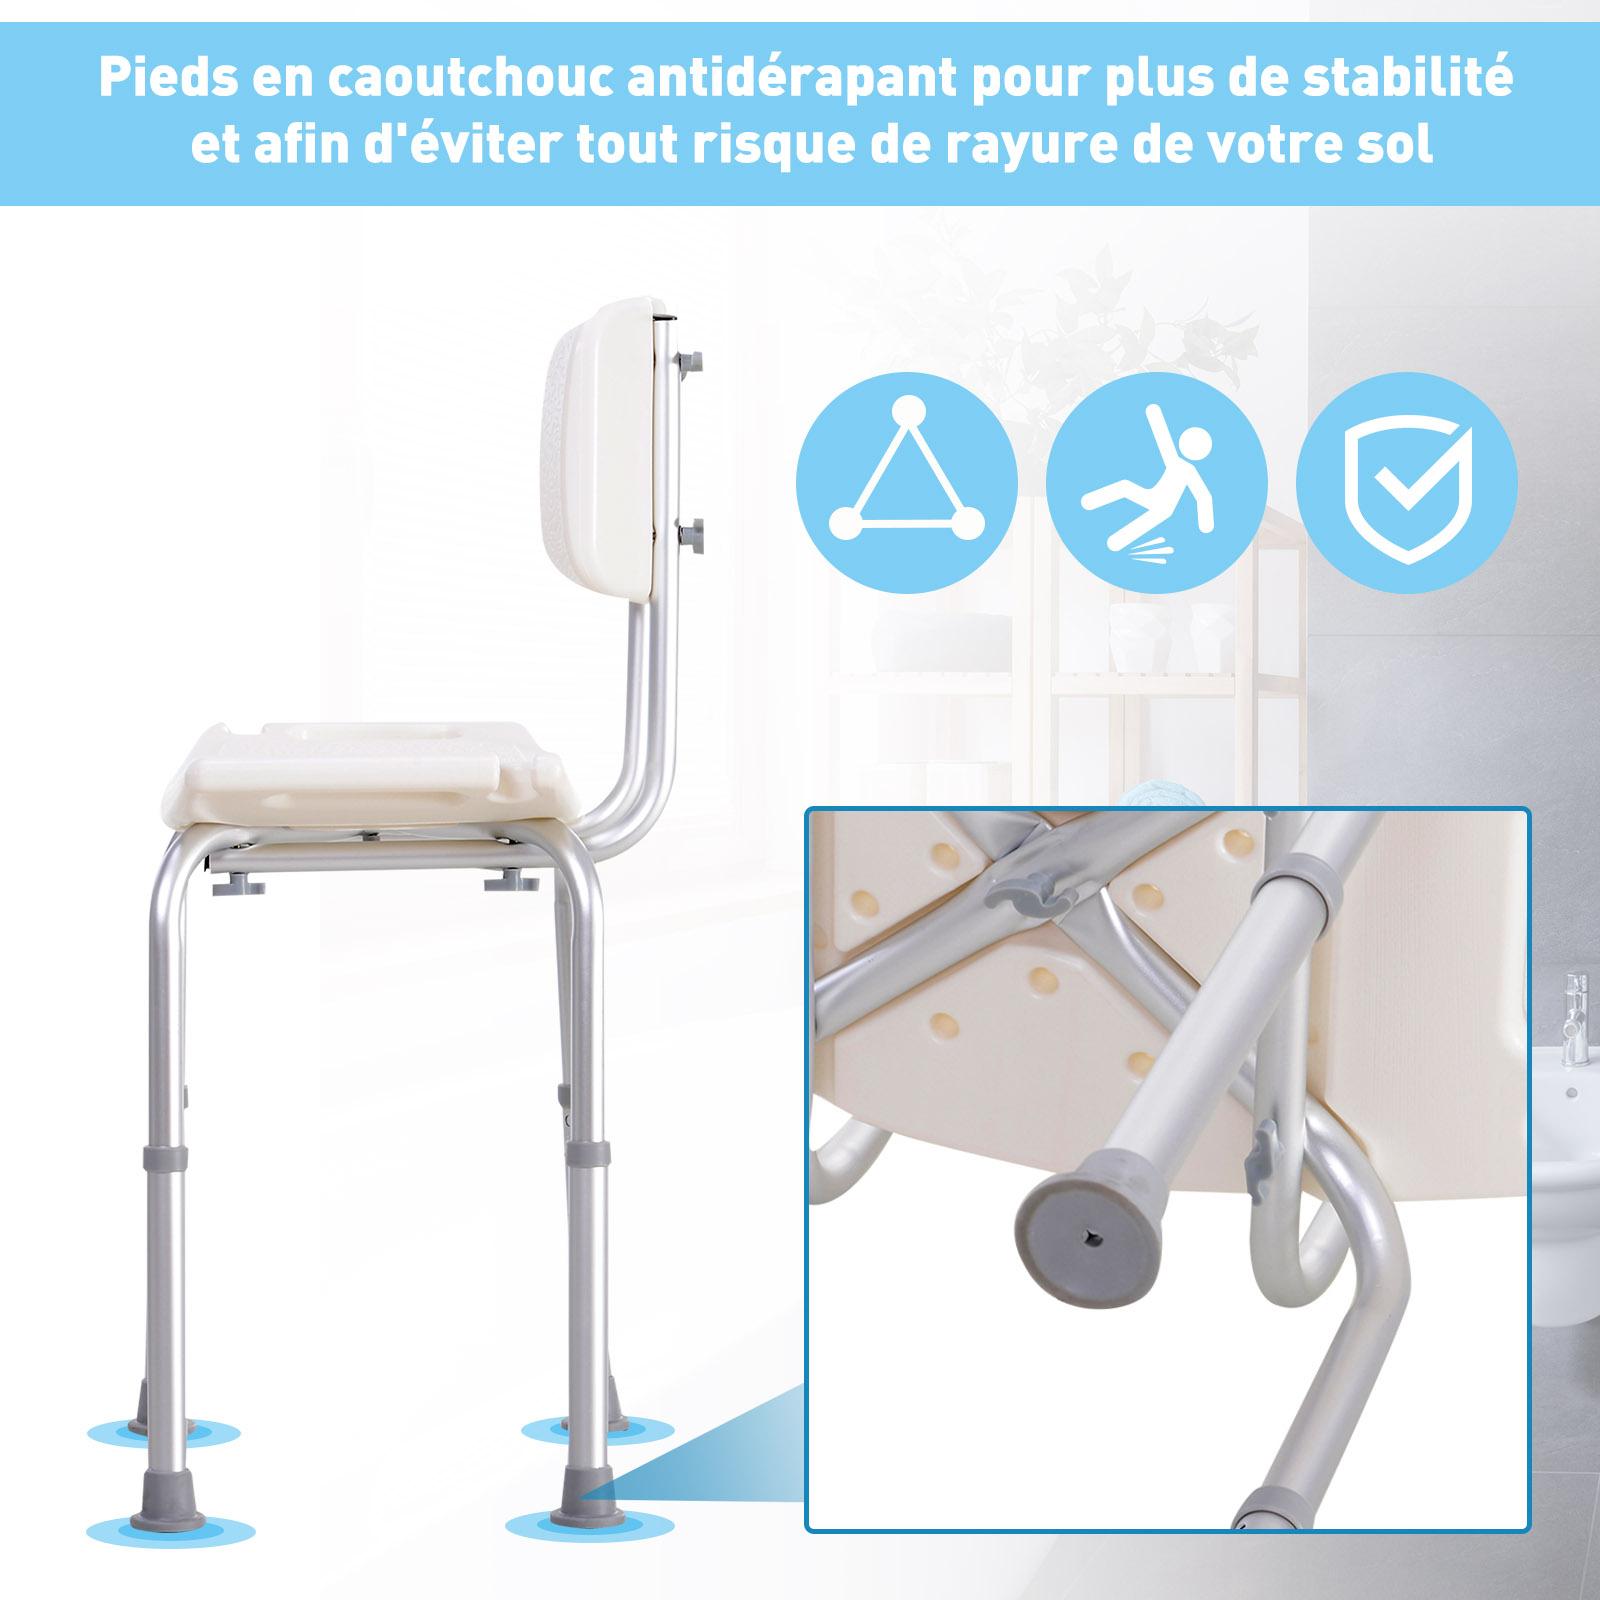 Chaise de douche siège de douche ergonomique hauteur réglable pieds antidérapants charge max. 136 Kg alu HDPE blanc